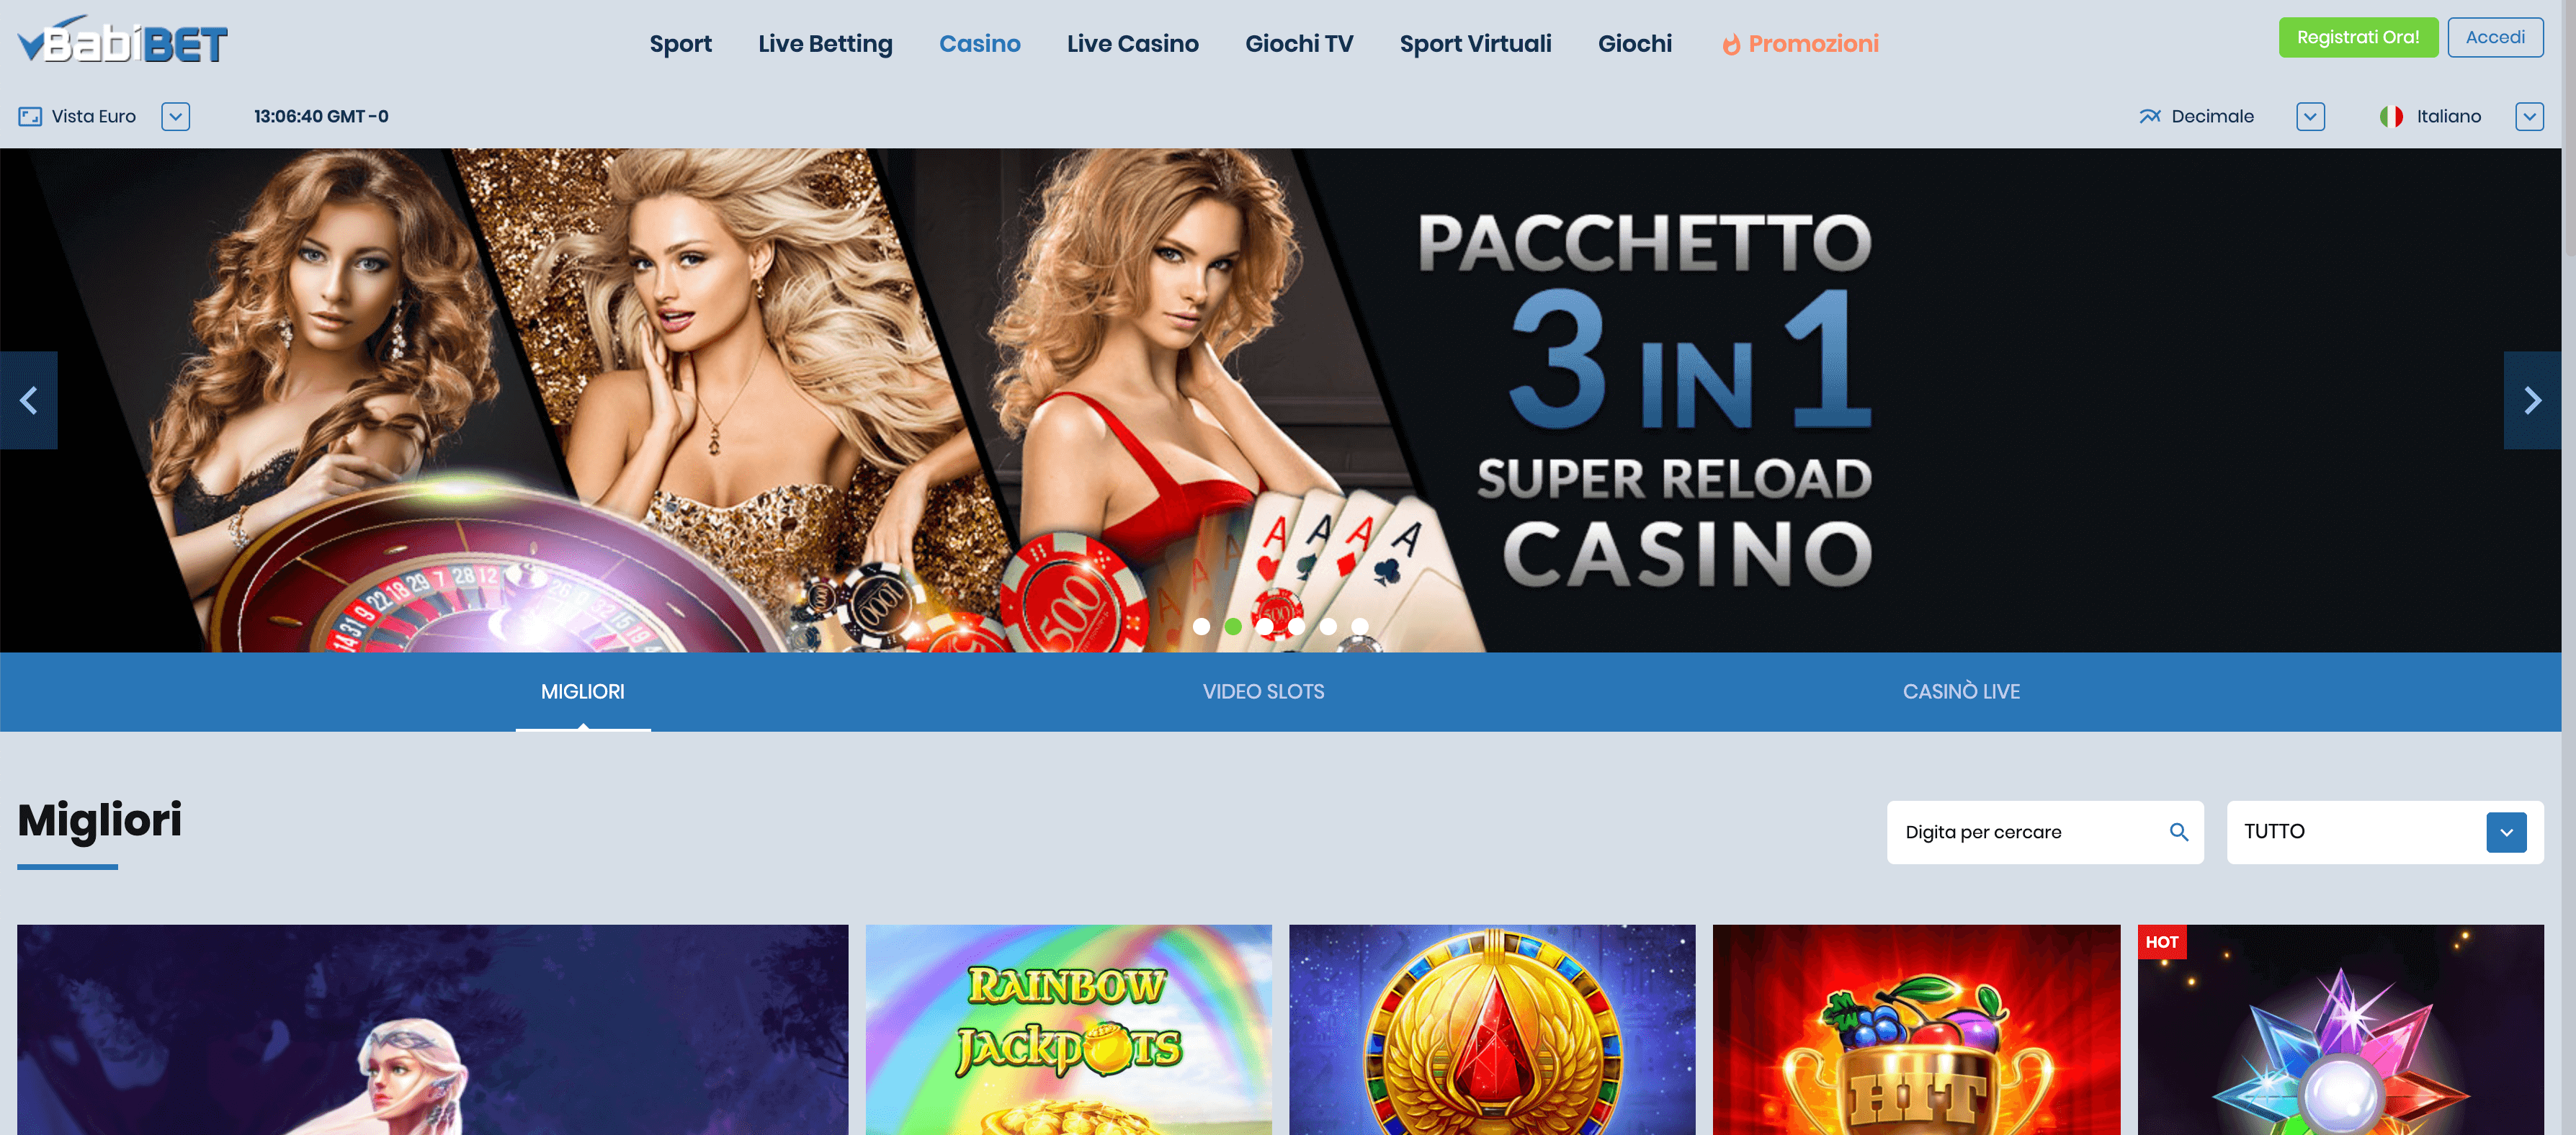 babibet casino homepage